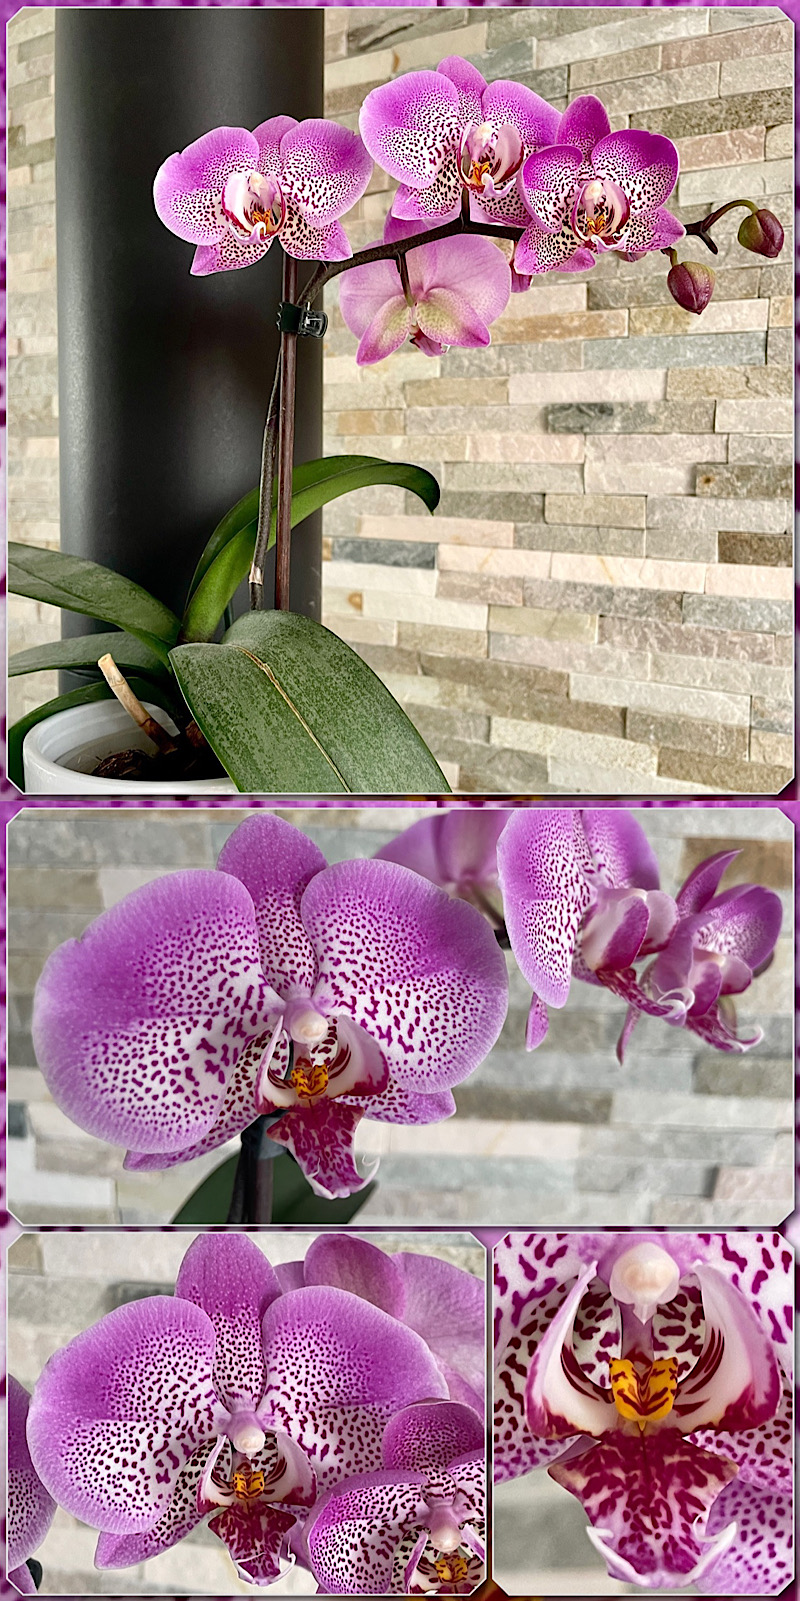 5 photos de l’hampe florale d’une orchidée phalaenopsis